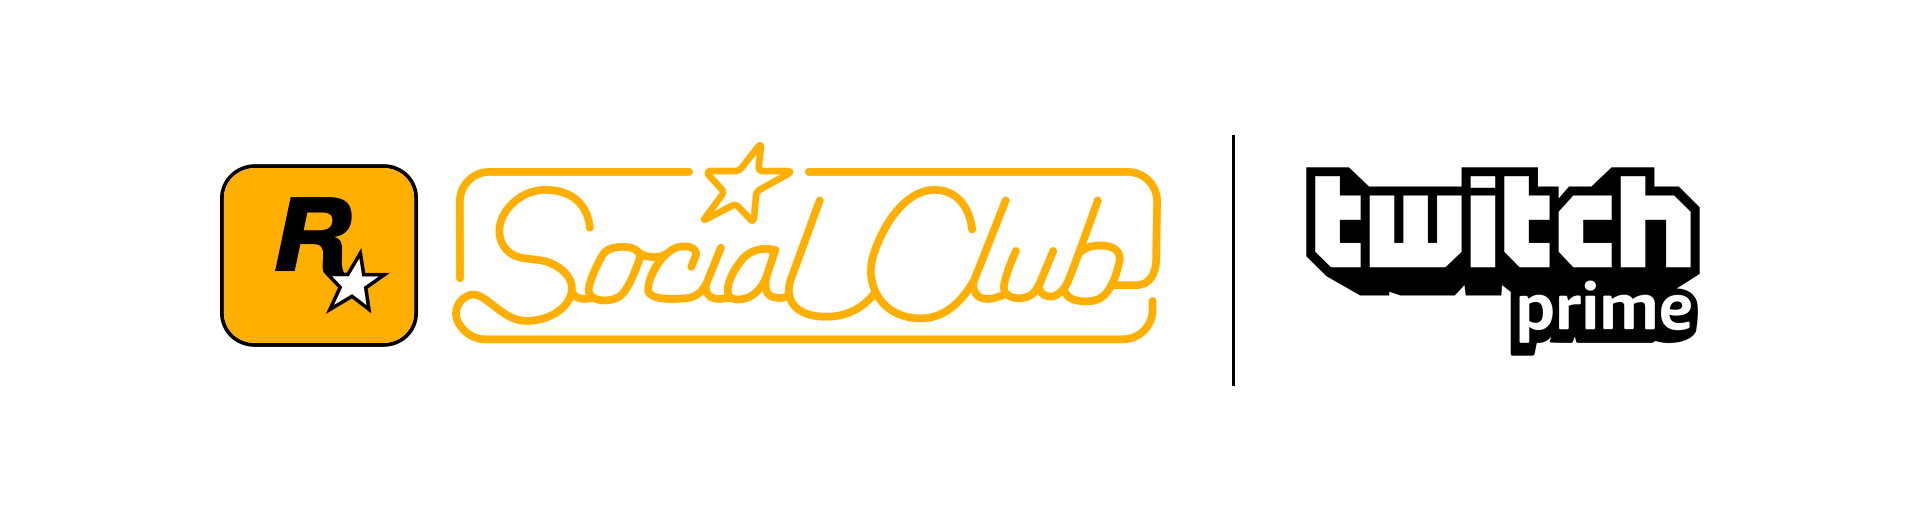 Rockstar Social Club Crew Emblem